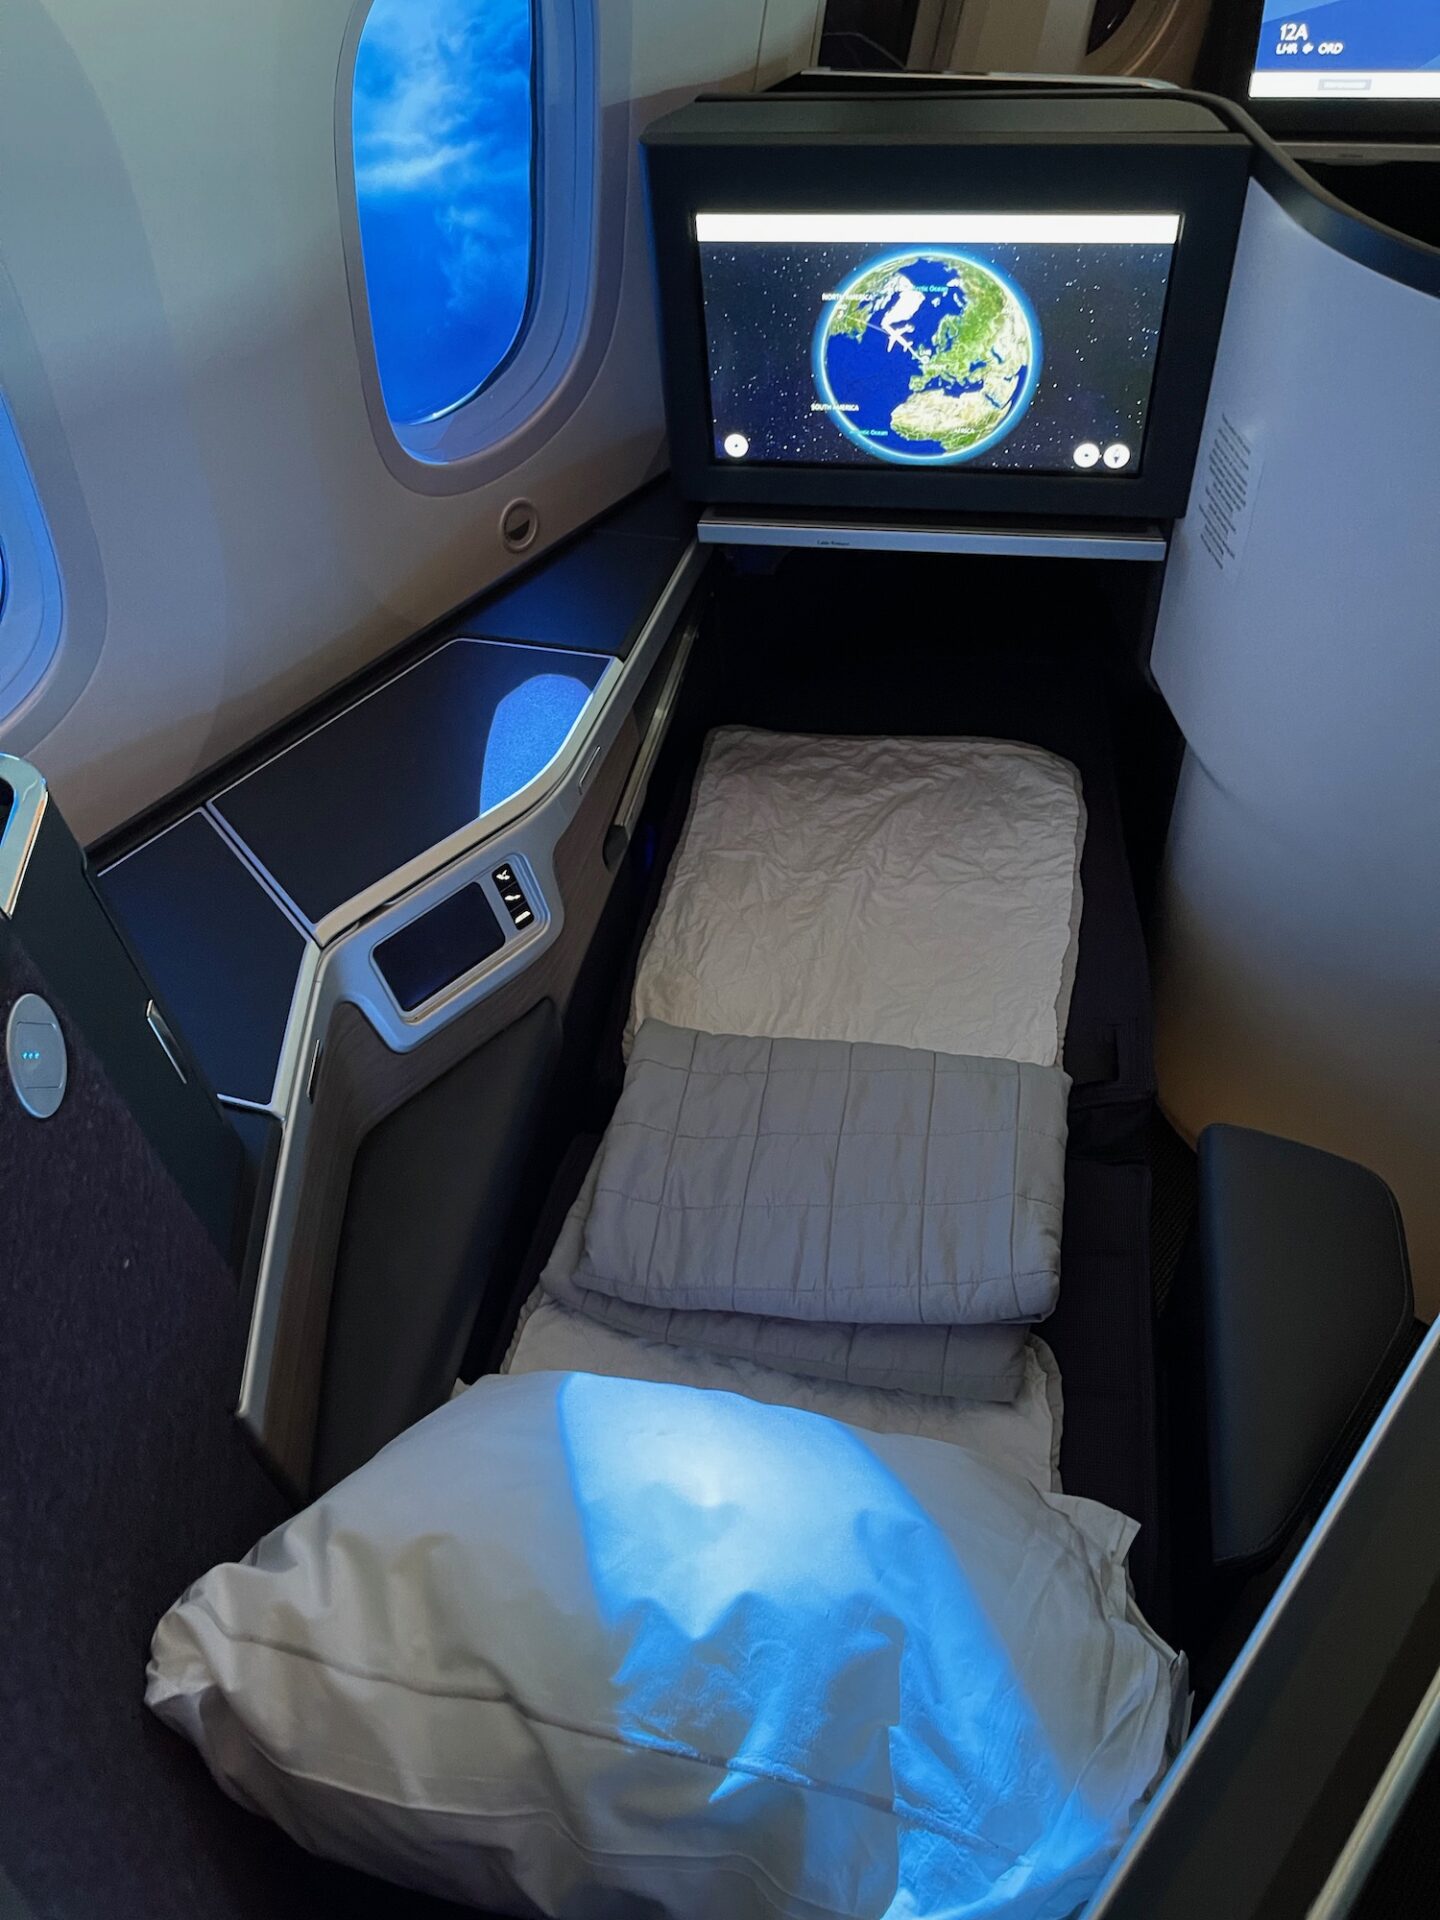 British Airways 787 10 Club World Suites 13 - Travel News, Insights & Resources.